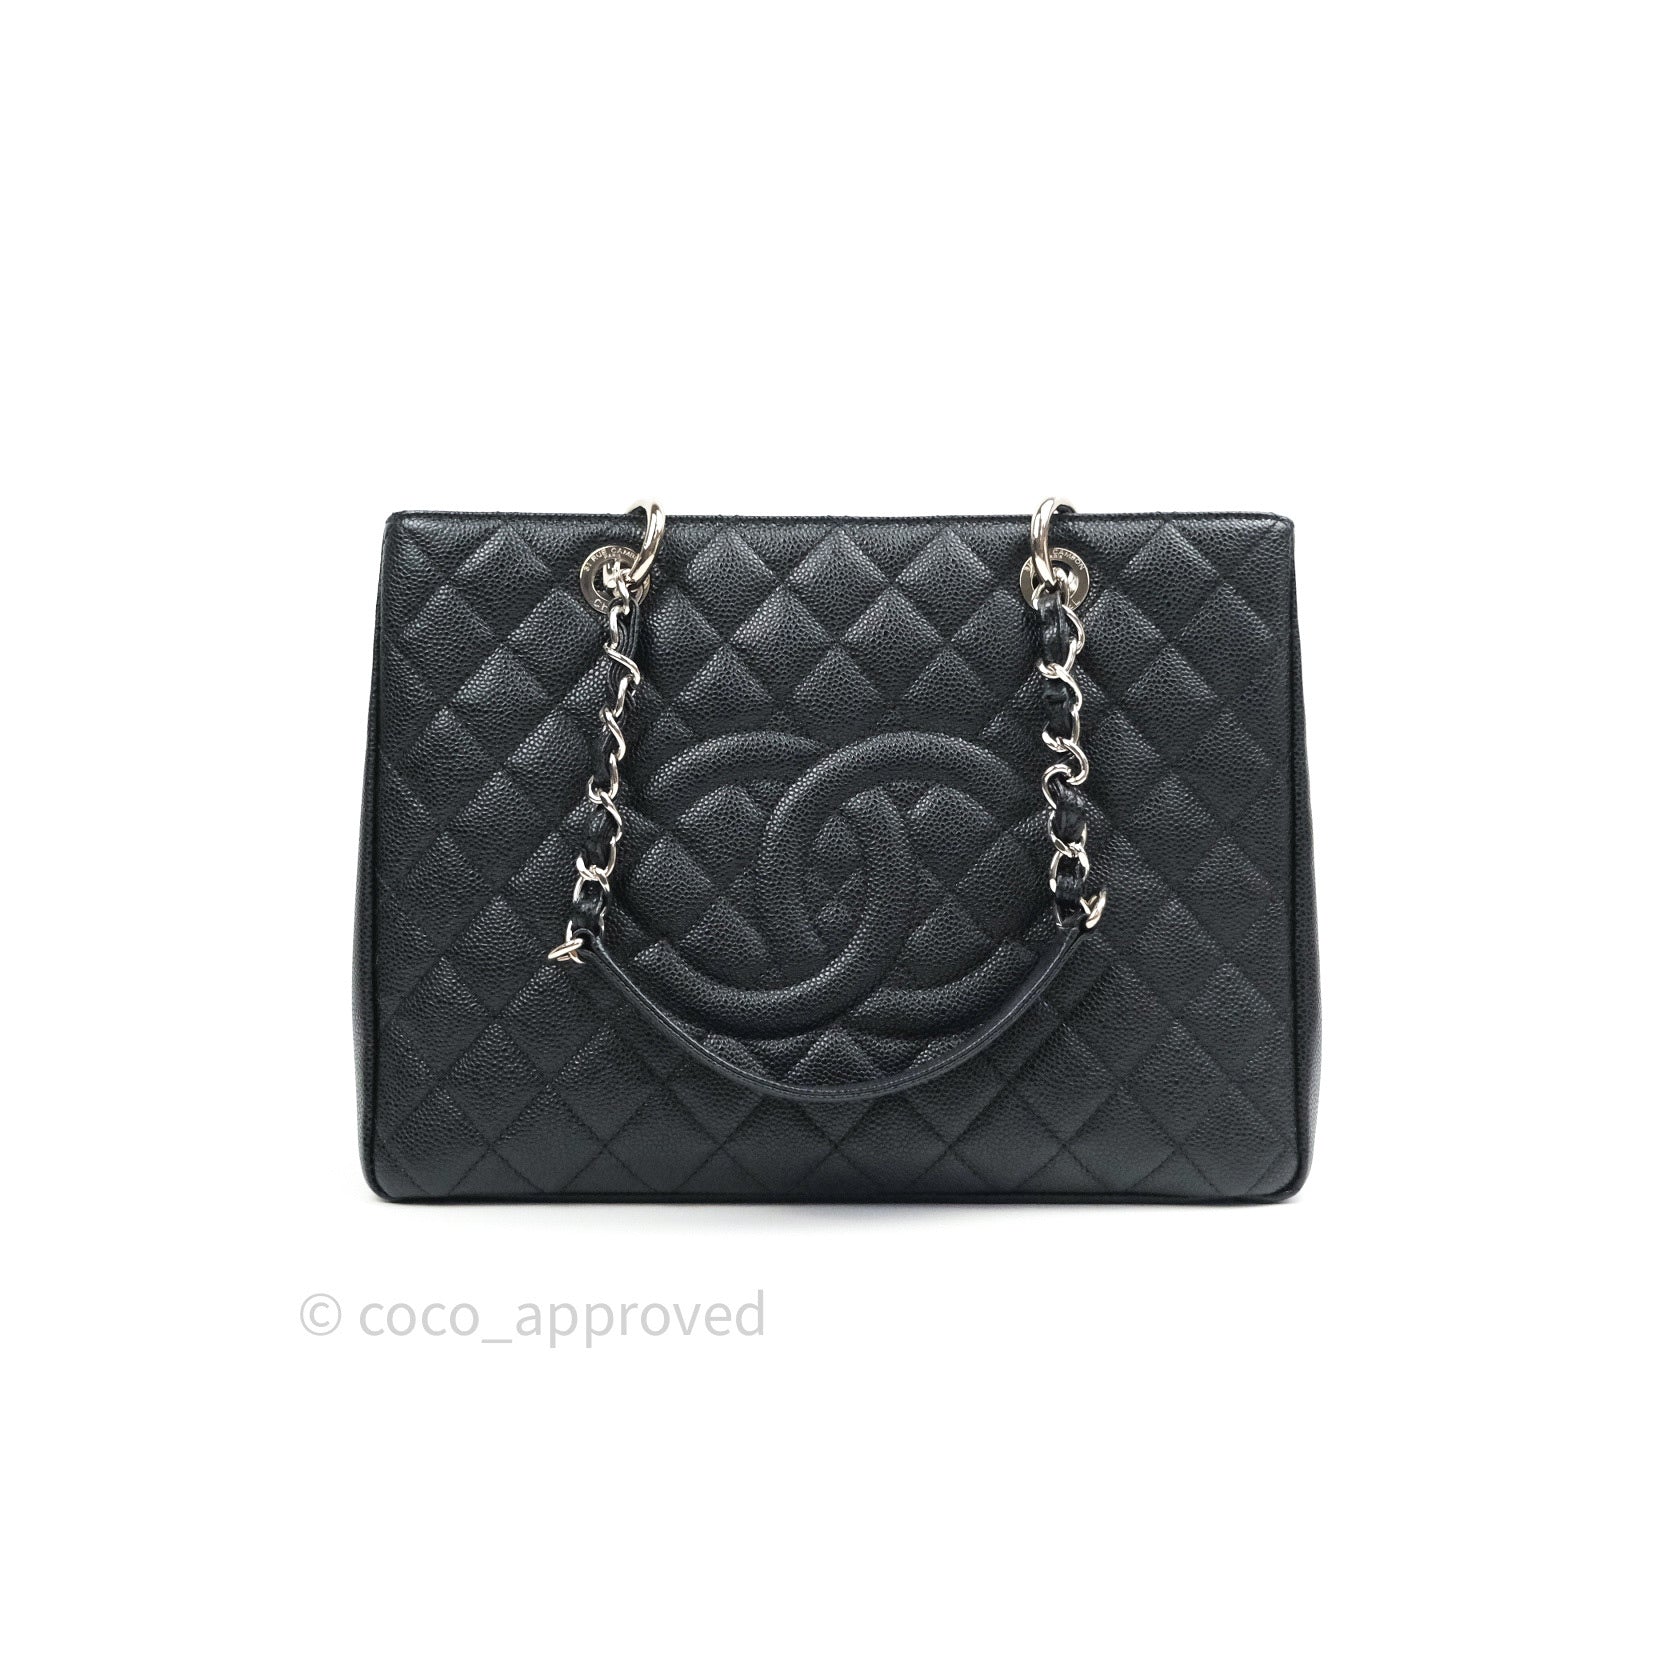 Chanel GST Grand Shopping Tote Black Caviar Silver Hardware – Coco